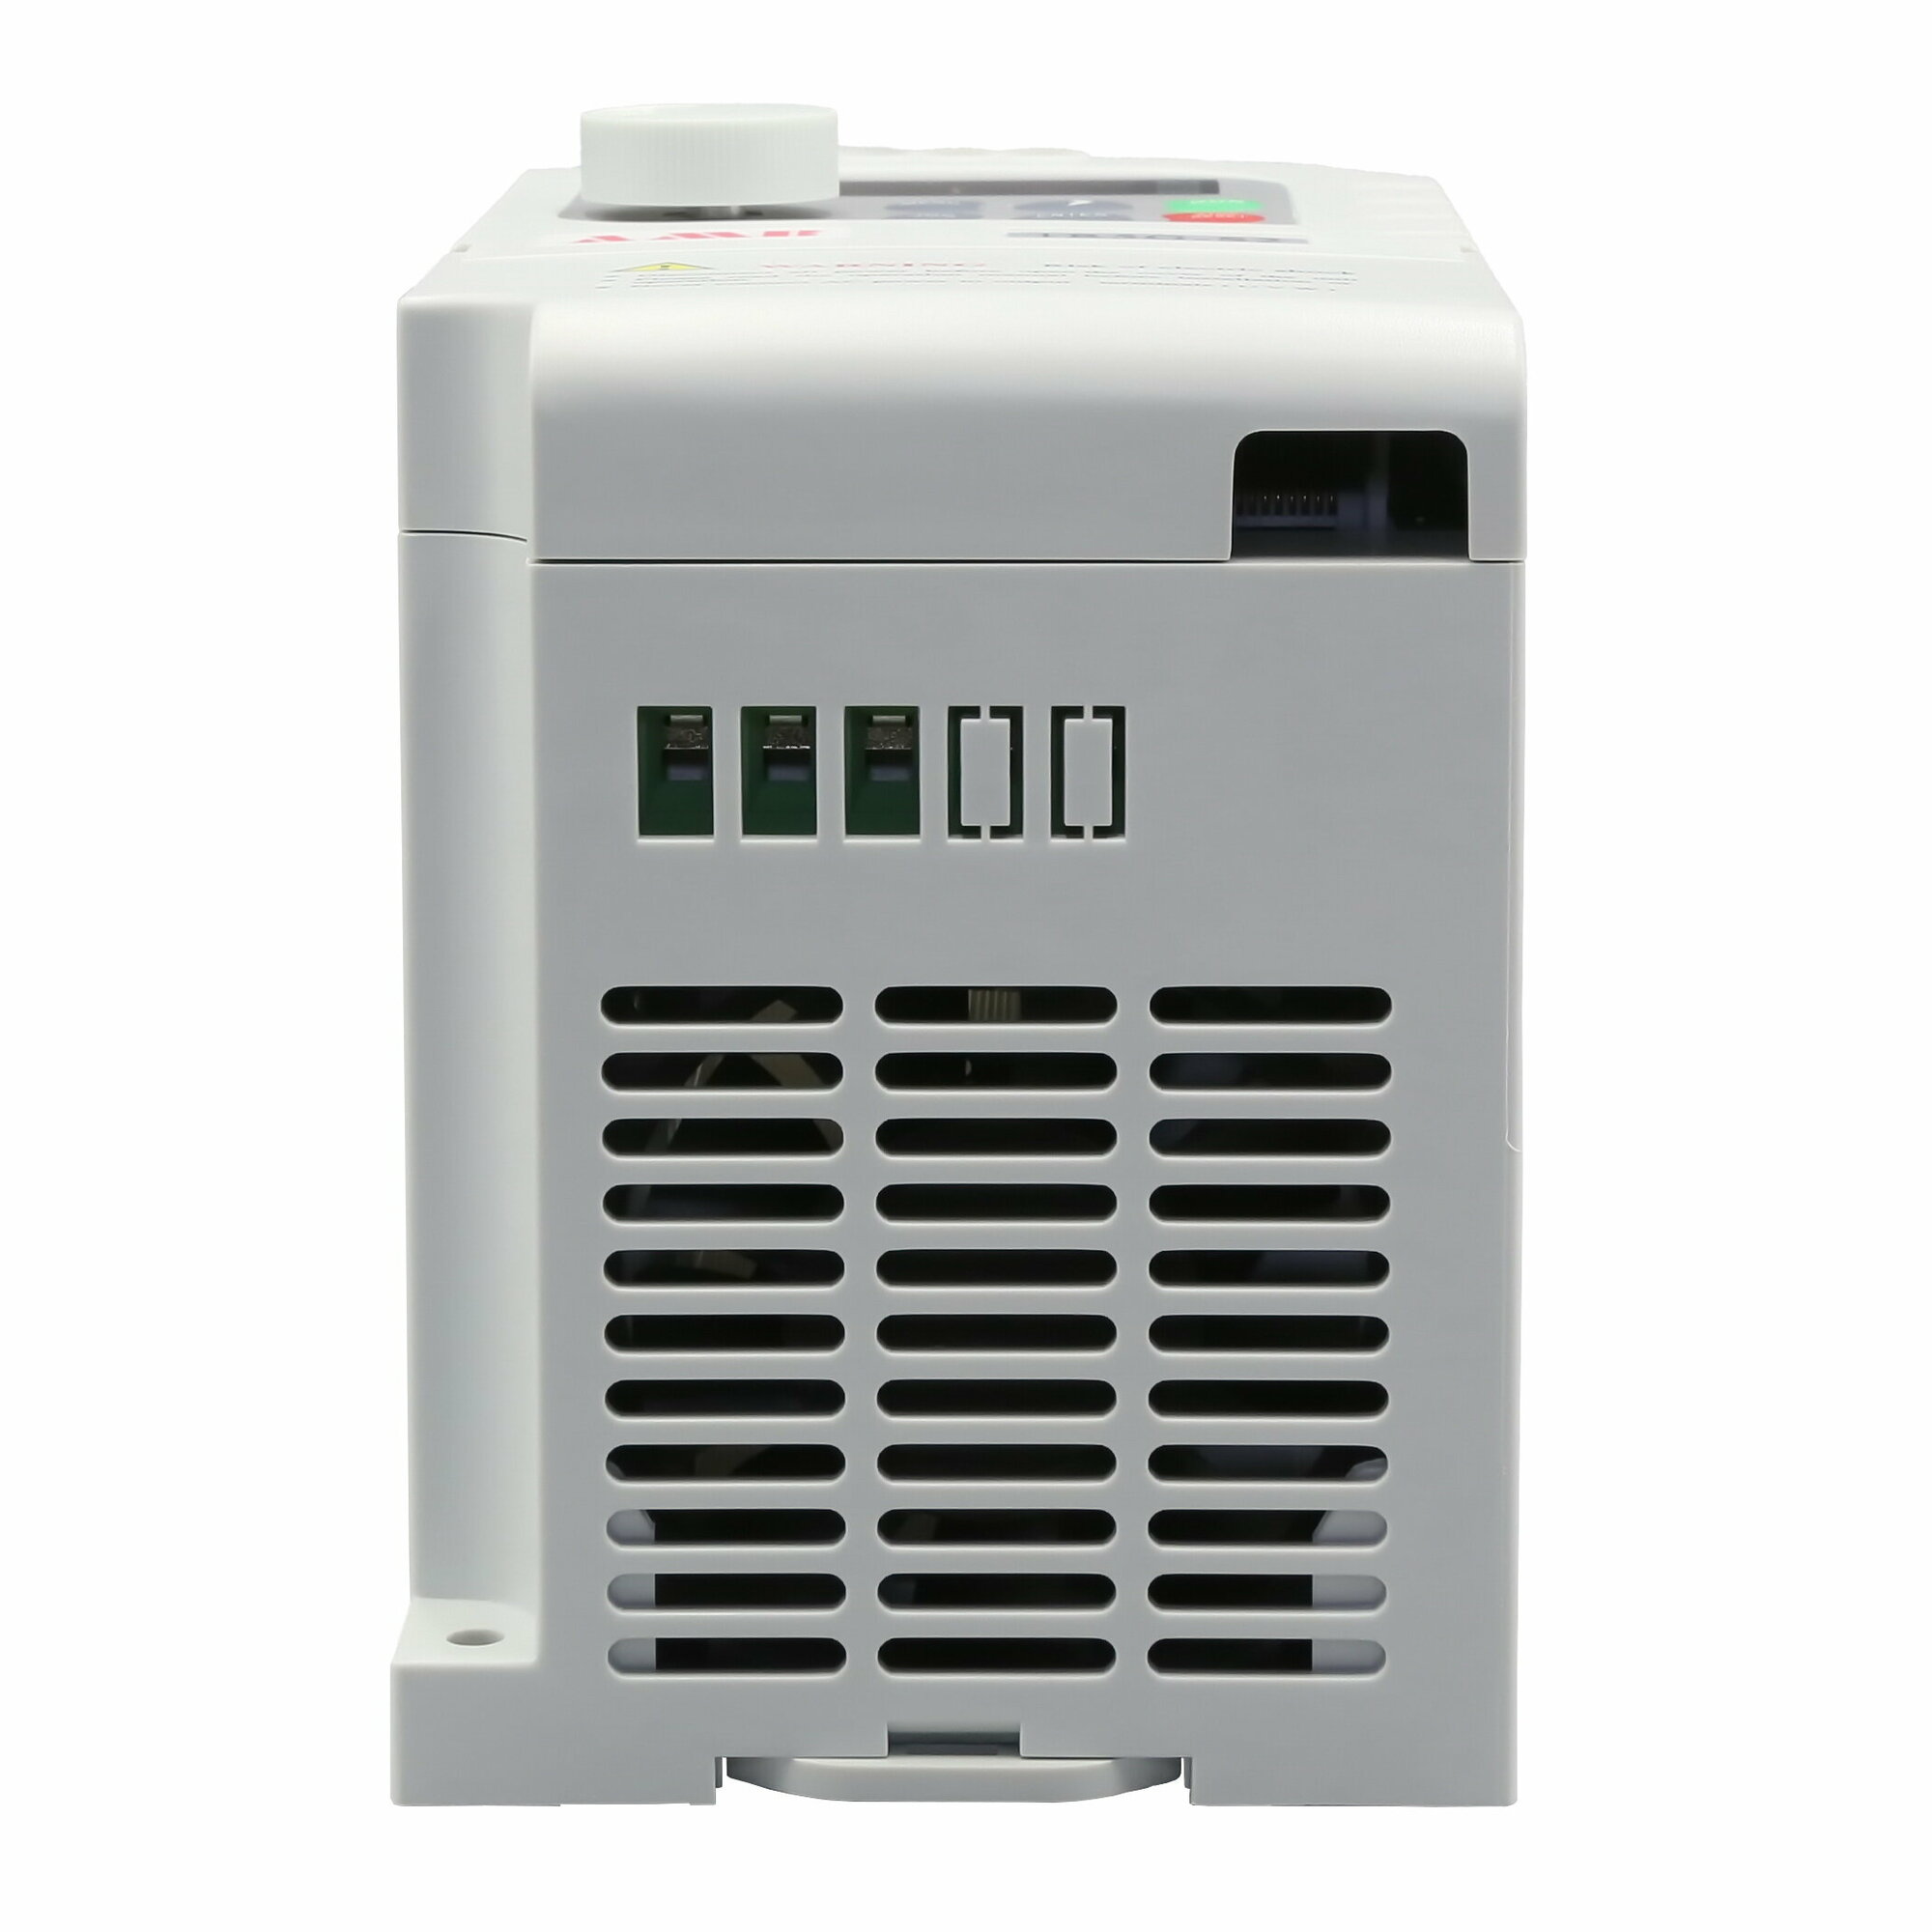 Частотный преобразователь AMB160+-1R5G-S2 15 кВт 220 В / Преобразователь частоты 15 кВт